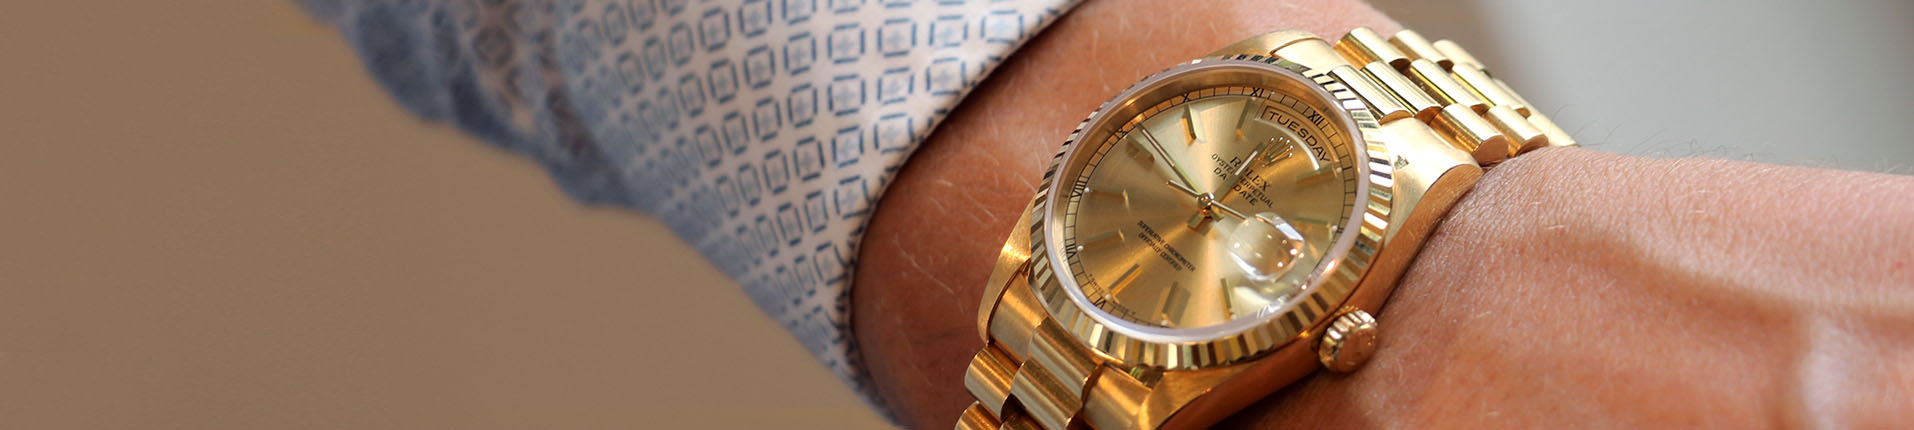 Gouden horloge verkopen? | Gratis taxatie sieraden